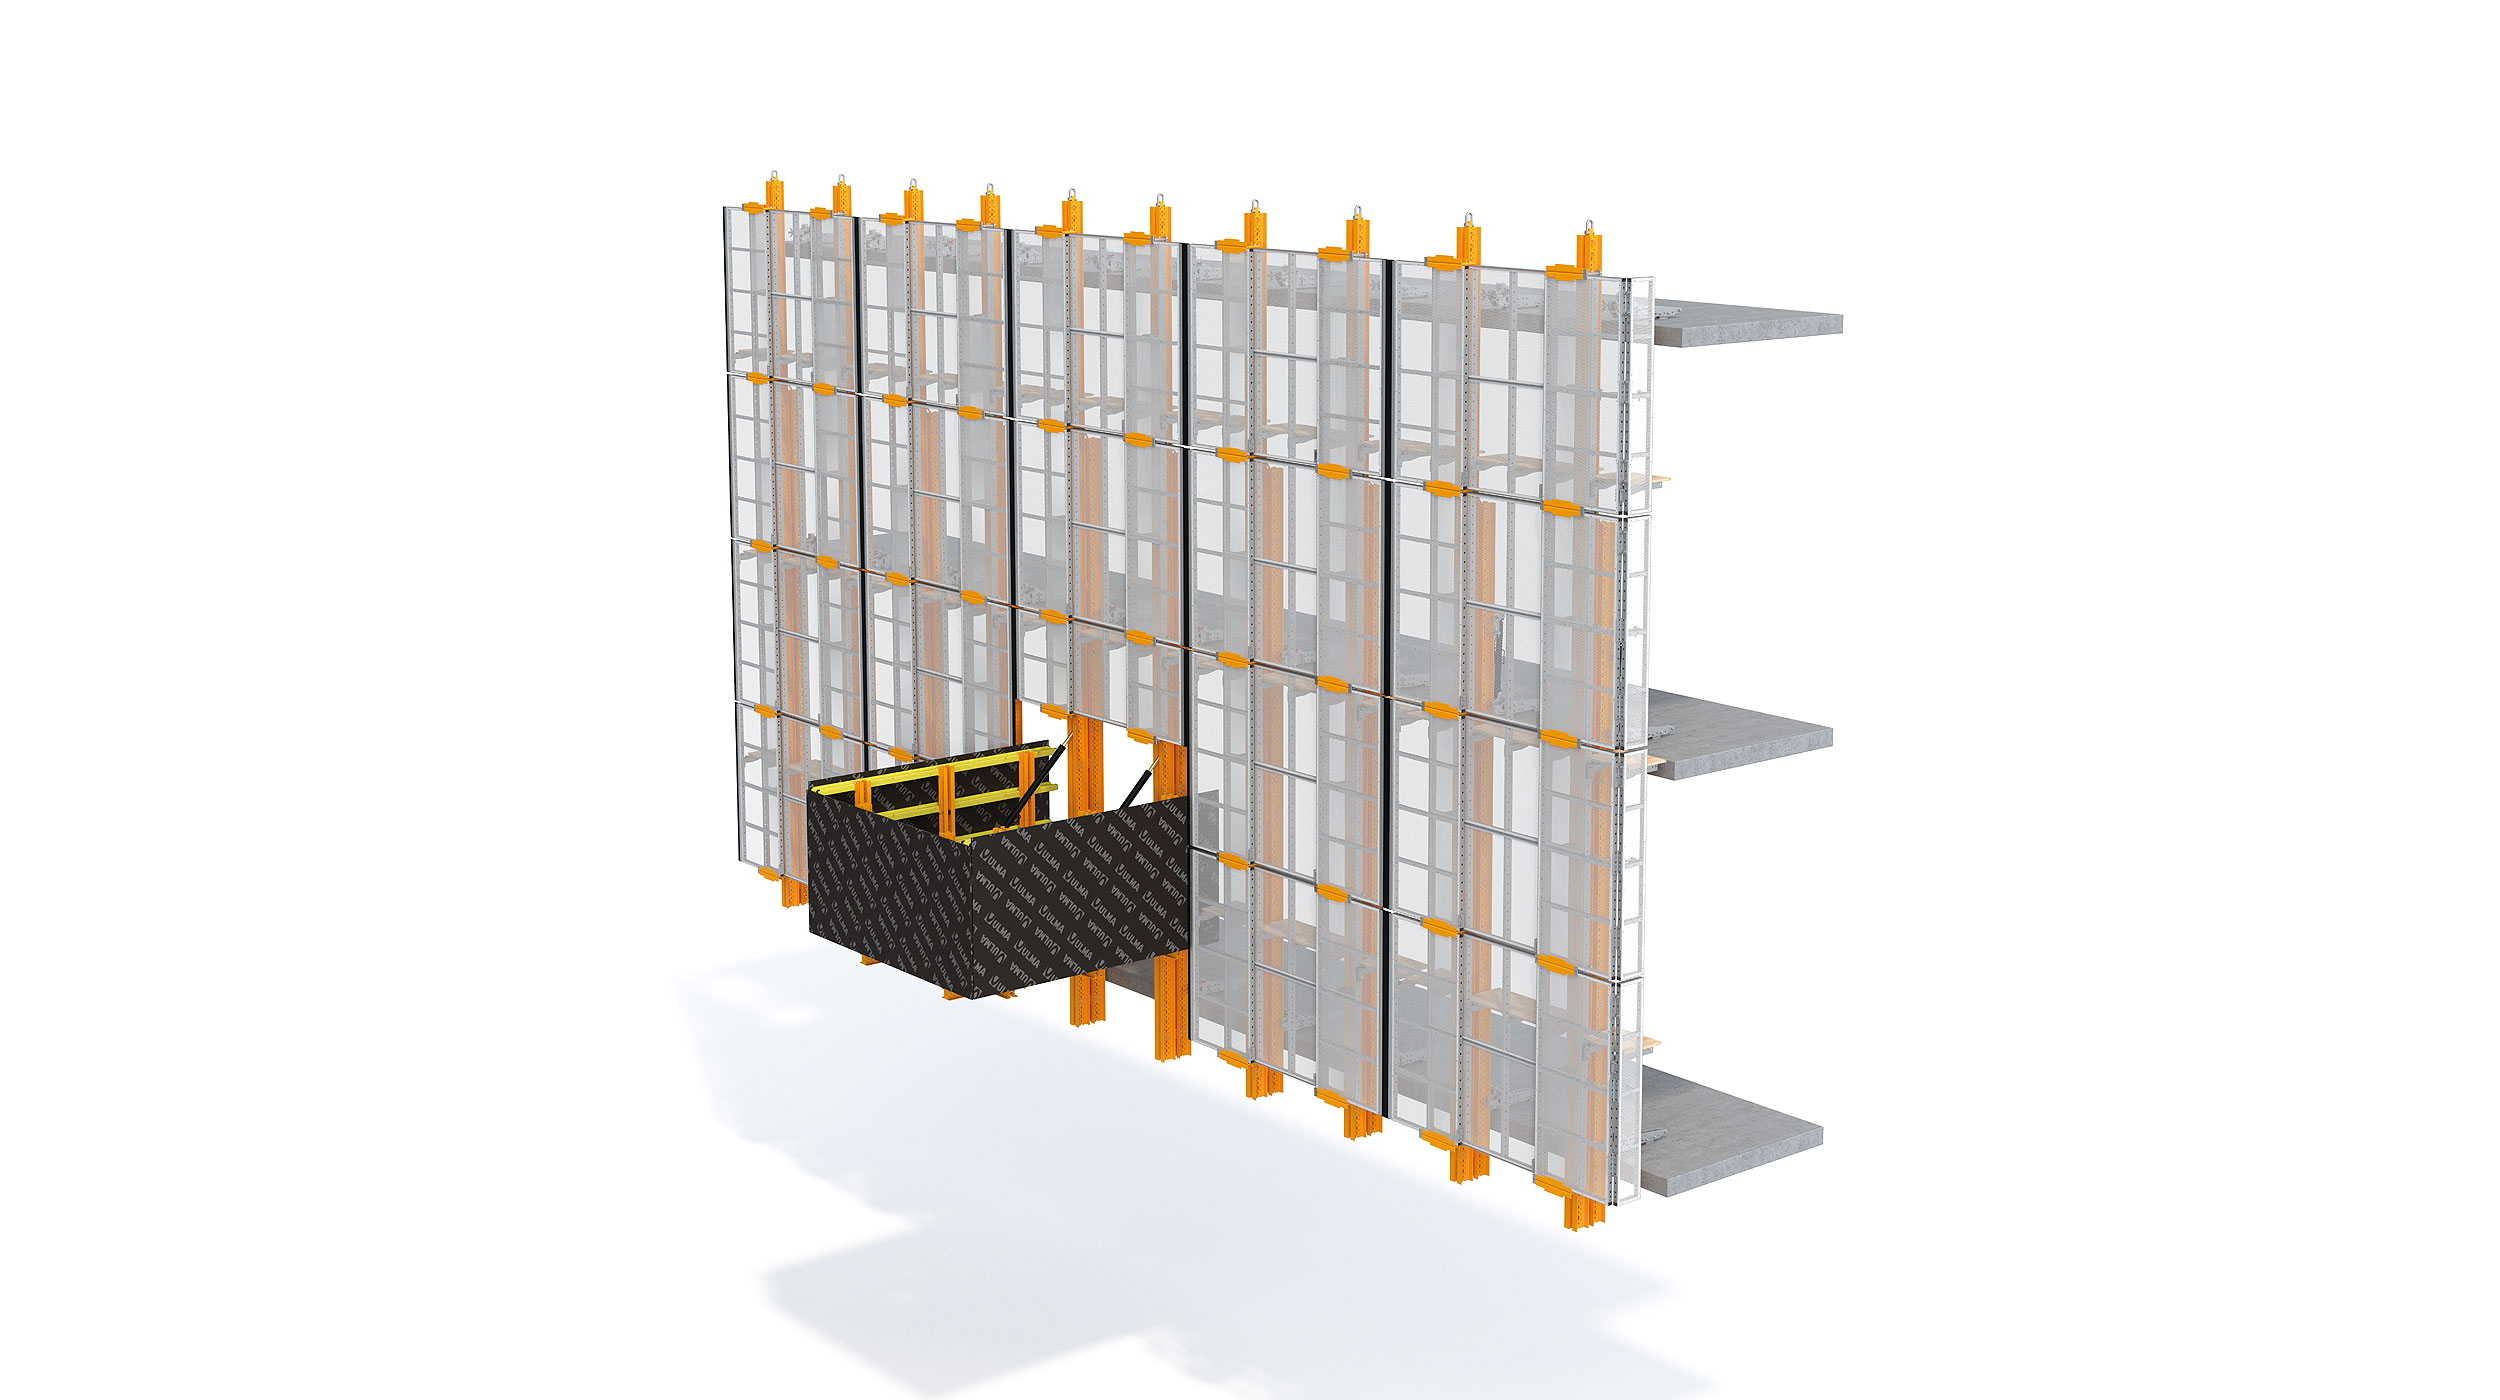 Schermo di protezione perimetrale estremamente flessibile che si adatta a qualsiasi esigenza di geometria e configurazione dell'edificio. Progettato per edifici alti, il sistema può essere idraulico o con gru.